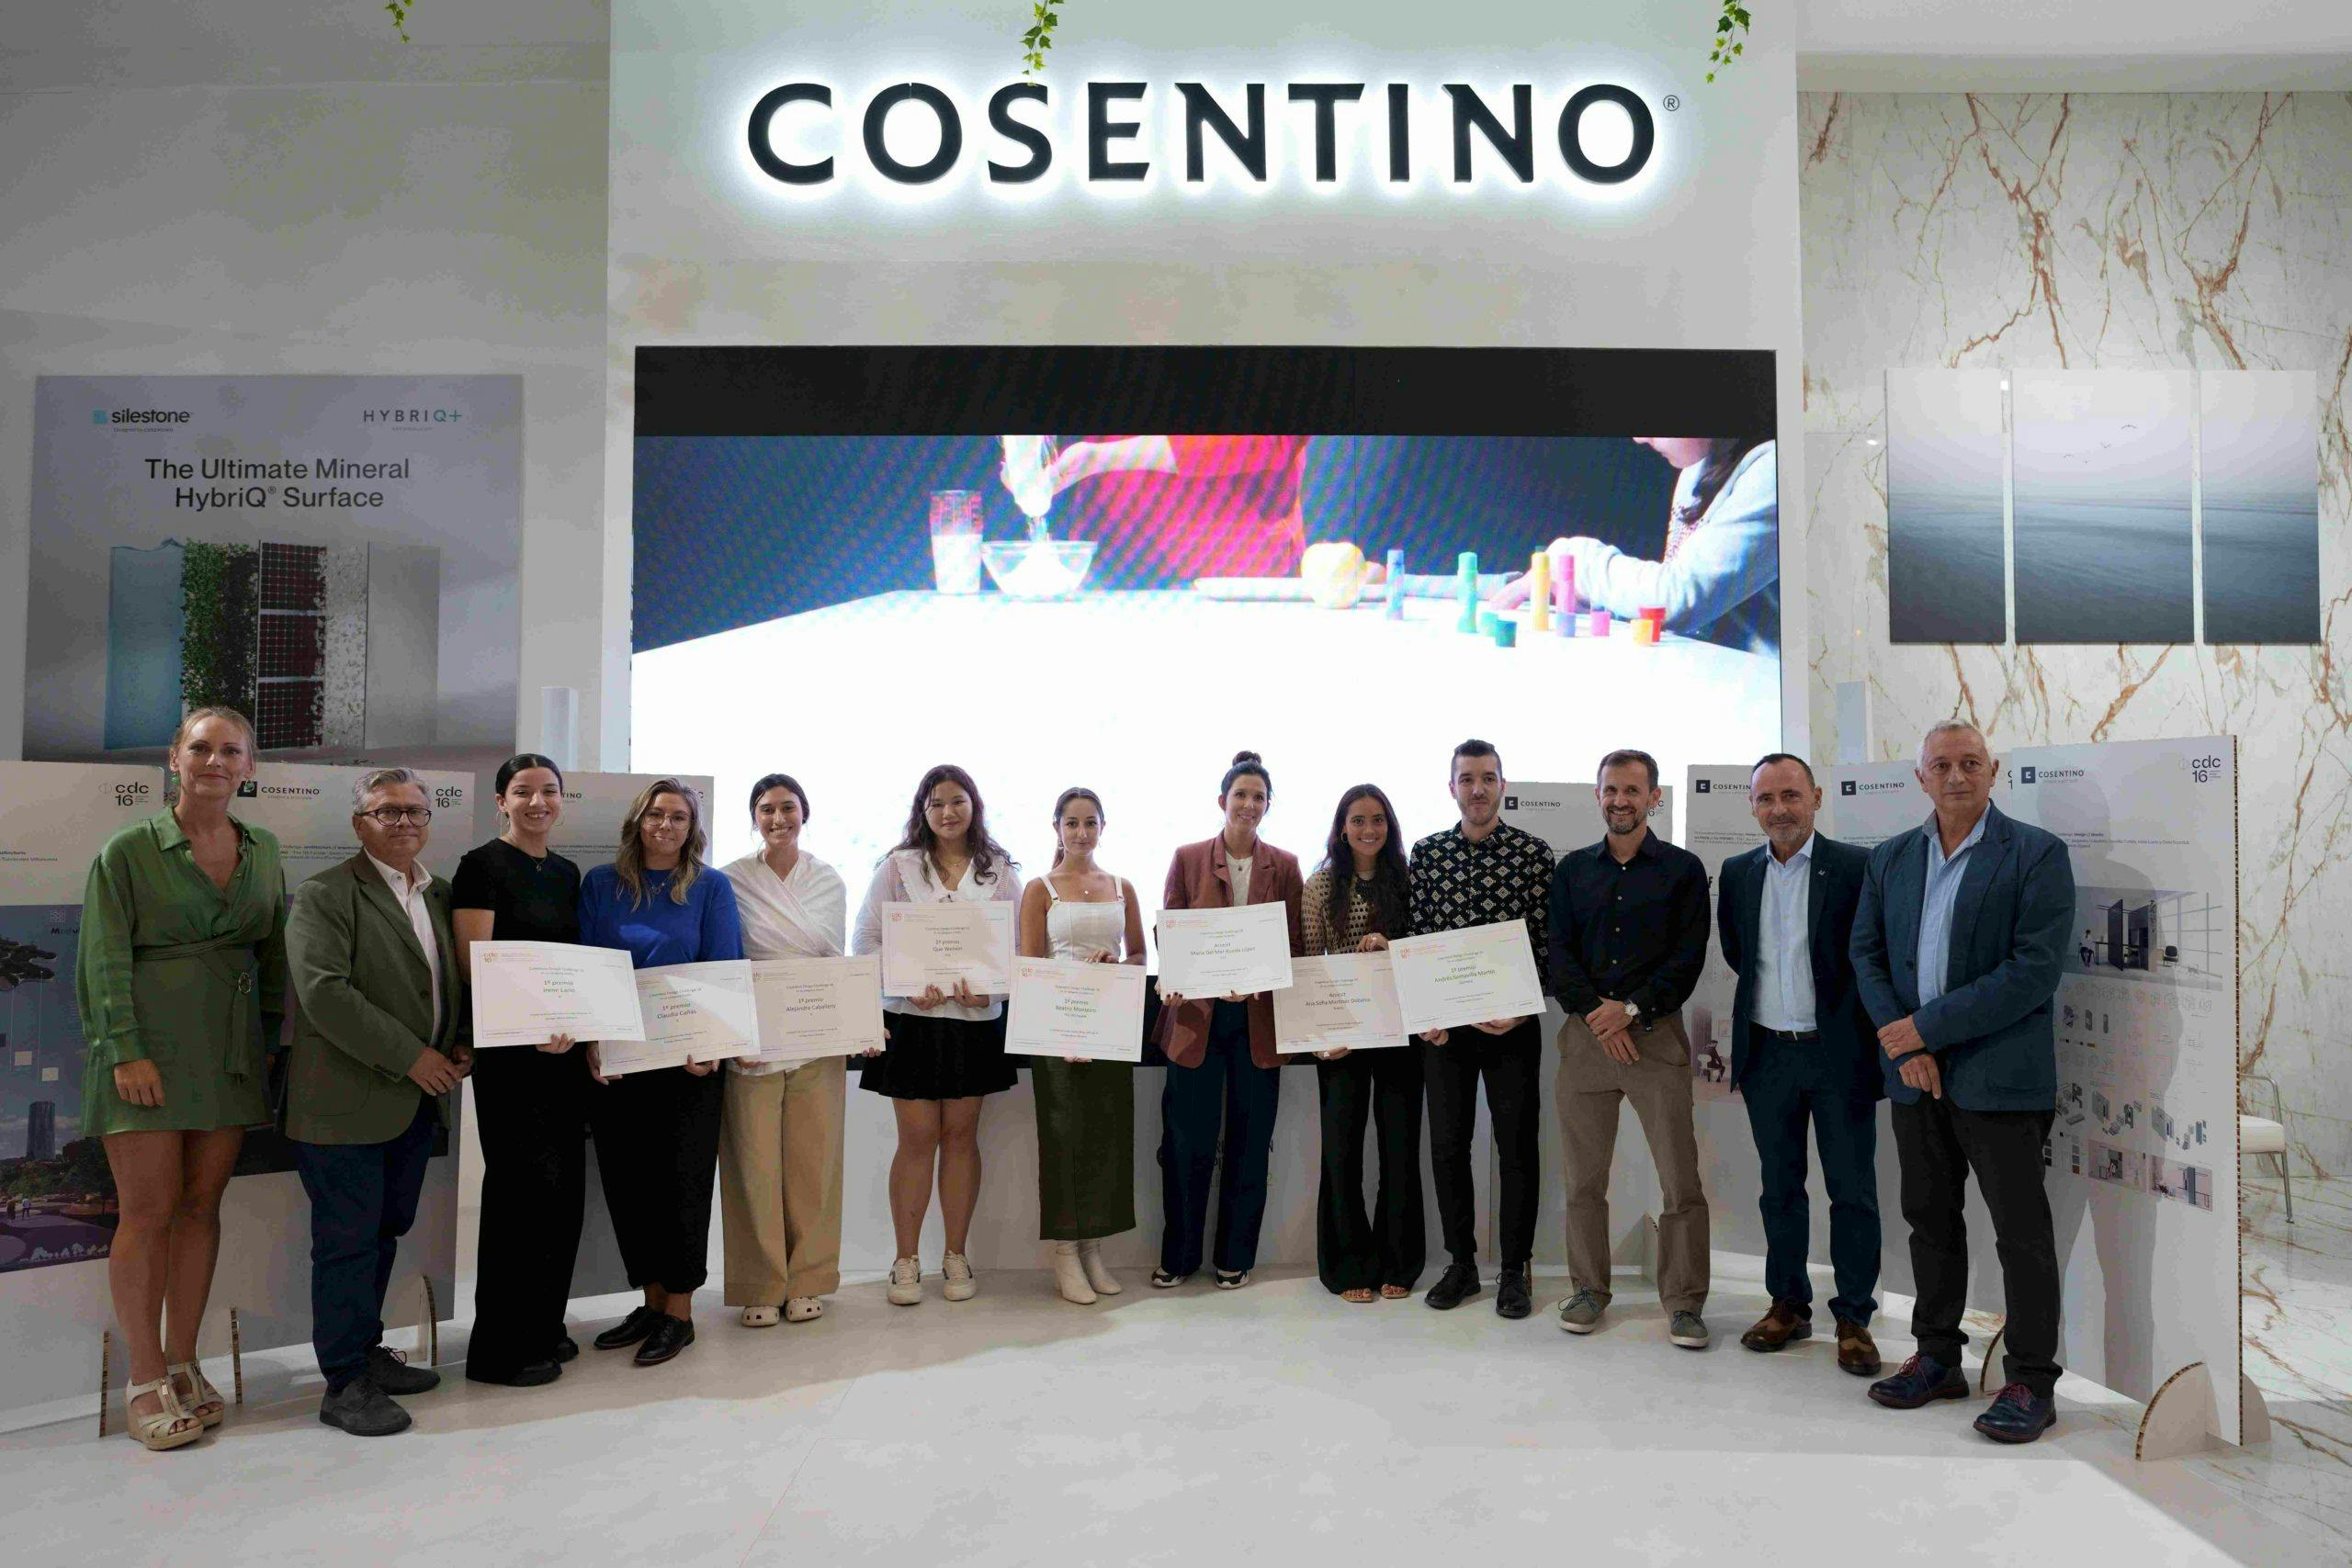 Image 32 of COSENTINO GRUPO CDC 2 1 5 scaled.jpg?auto=format%2Ccompress&ixlib=php 3.3 in Cosentino launches the 17th edition of Cosentino Design Challenge - Cosentino